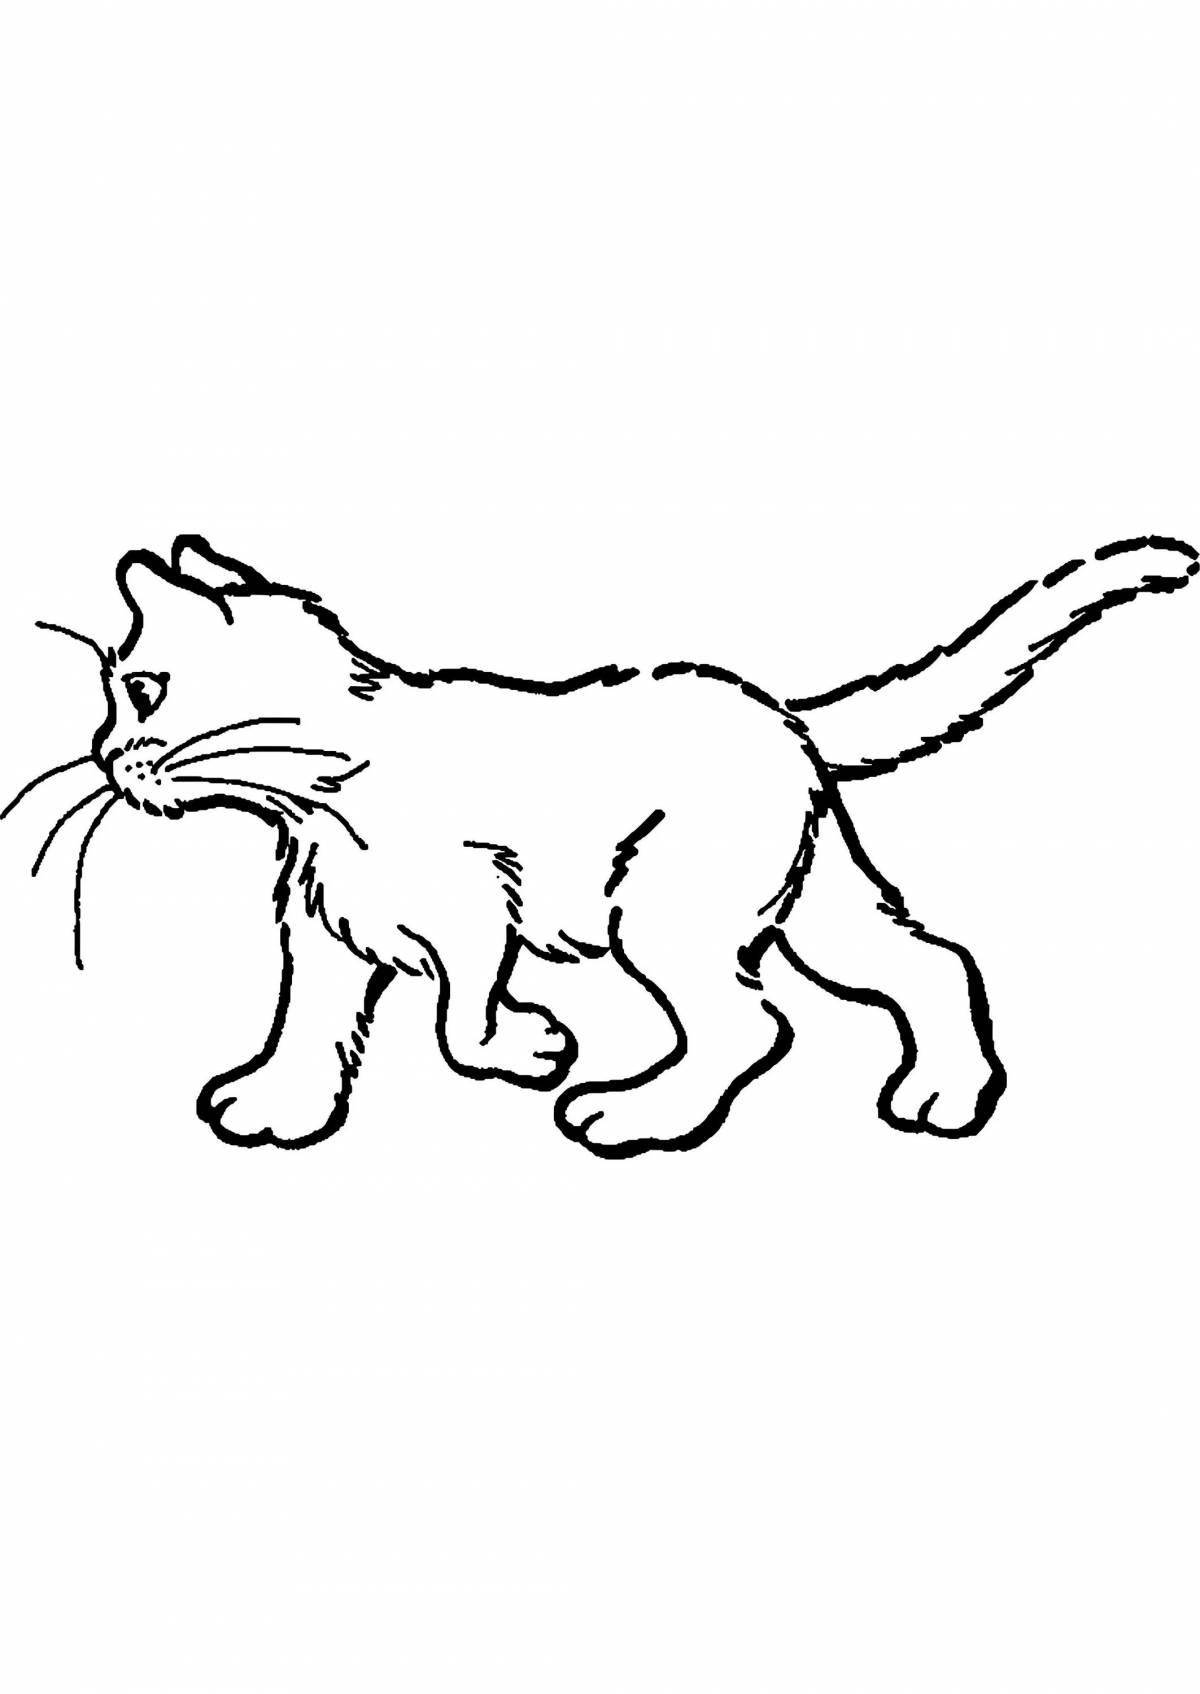 Раскраска яркая кавказская лесная кошка